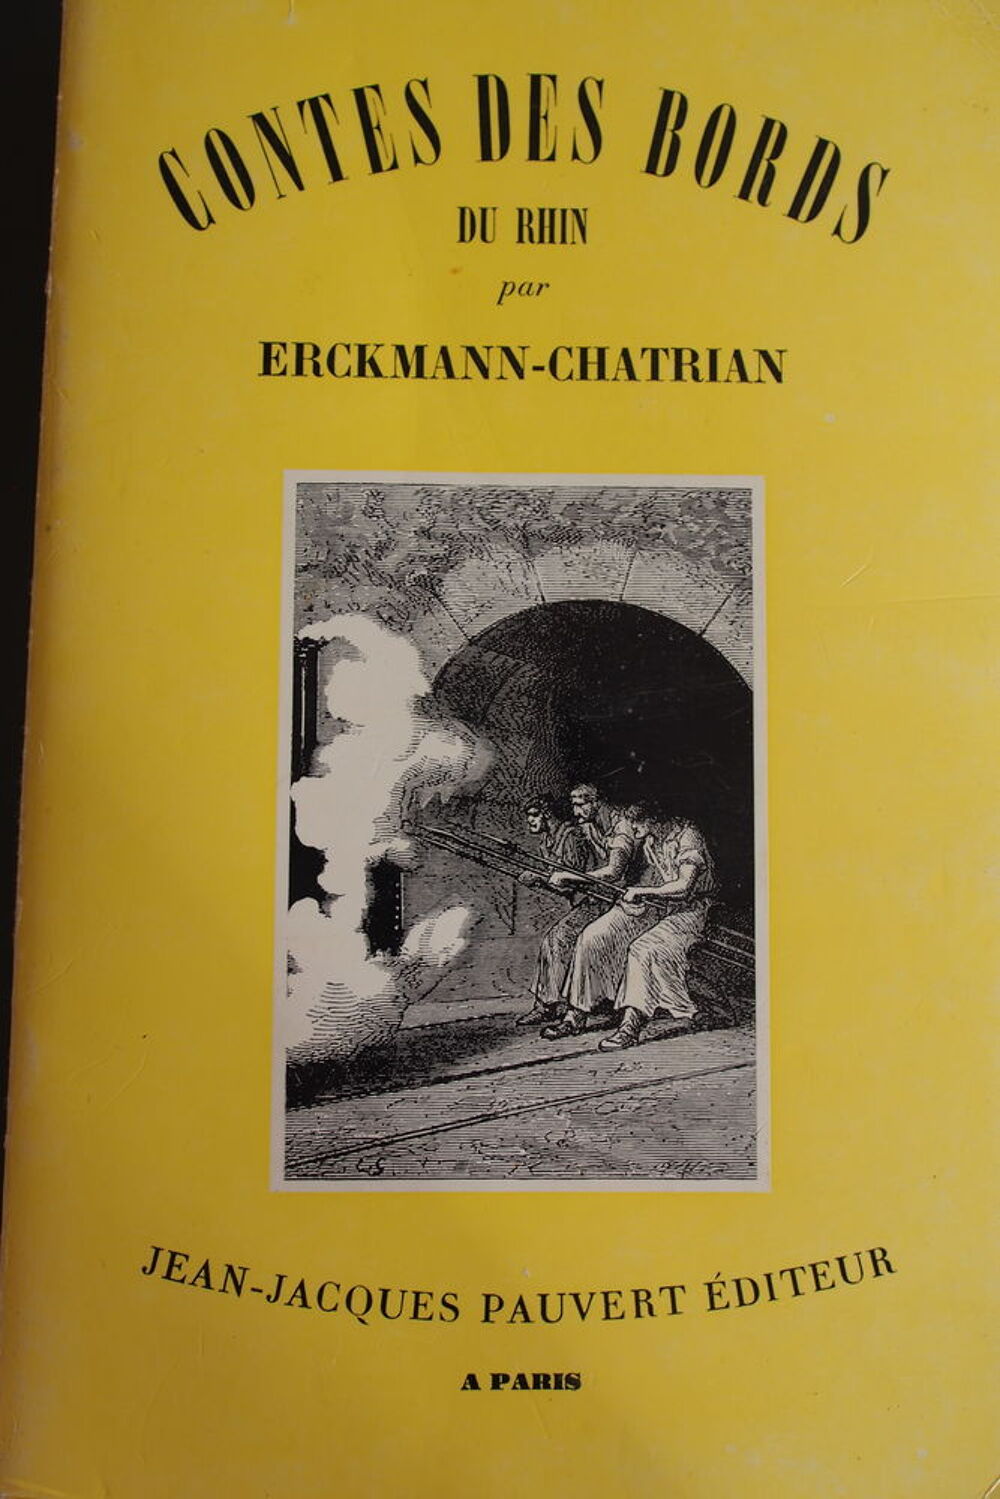 Contes des bords du Rhin - Erckmann-Chatrian, Livres et BD